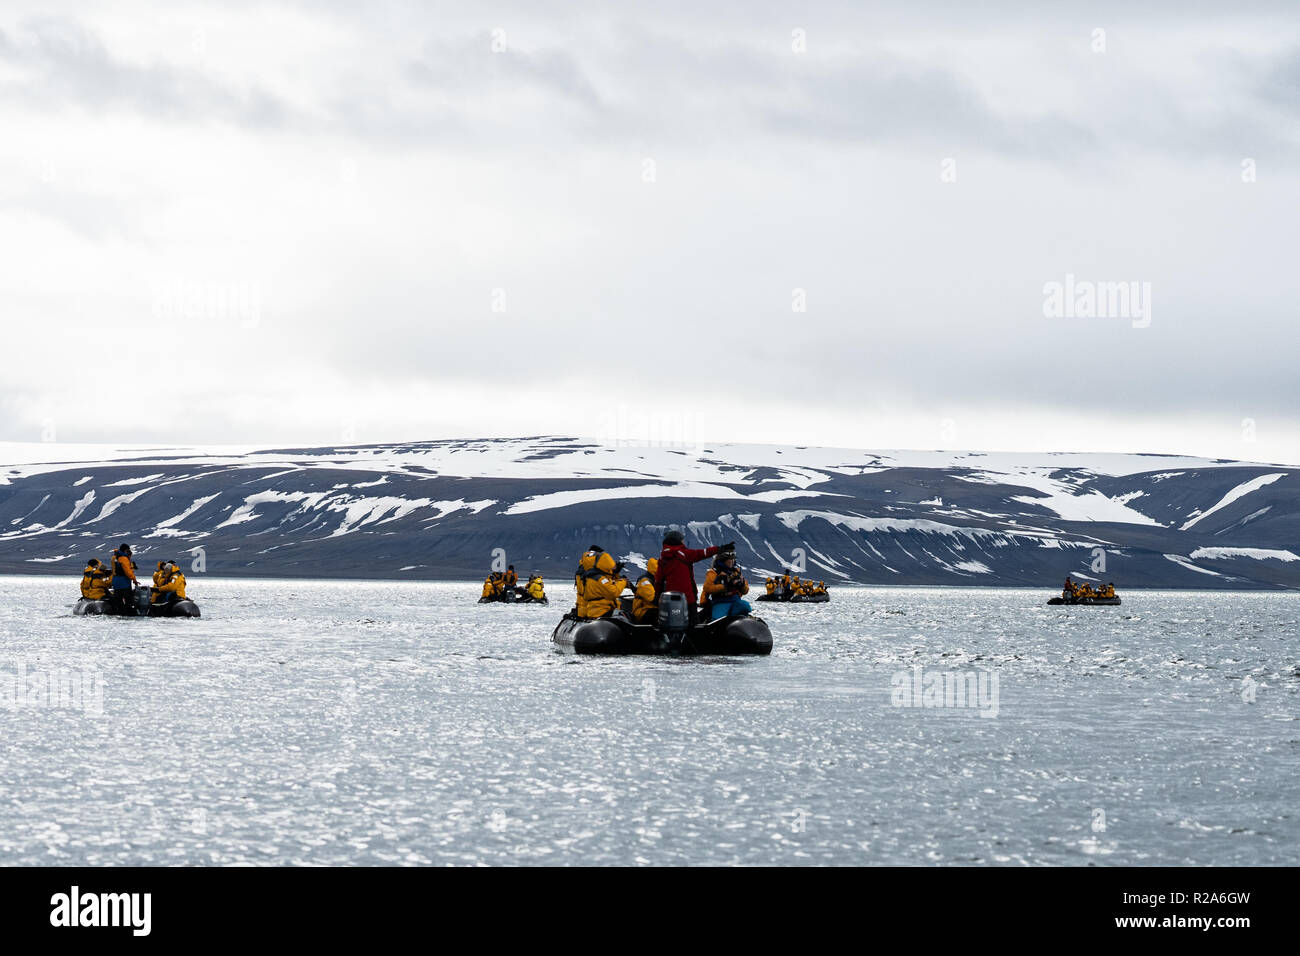 Aventures croisière sur un zodiac canot sur les glaces dans les eaux côtières de l'Arctique. Spitsbergen, Svalbard, Norvège, Scandinavie Banque D'Images